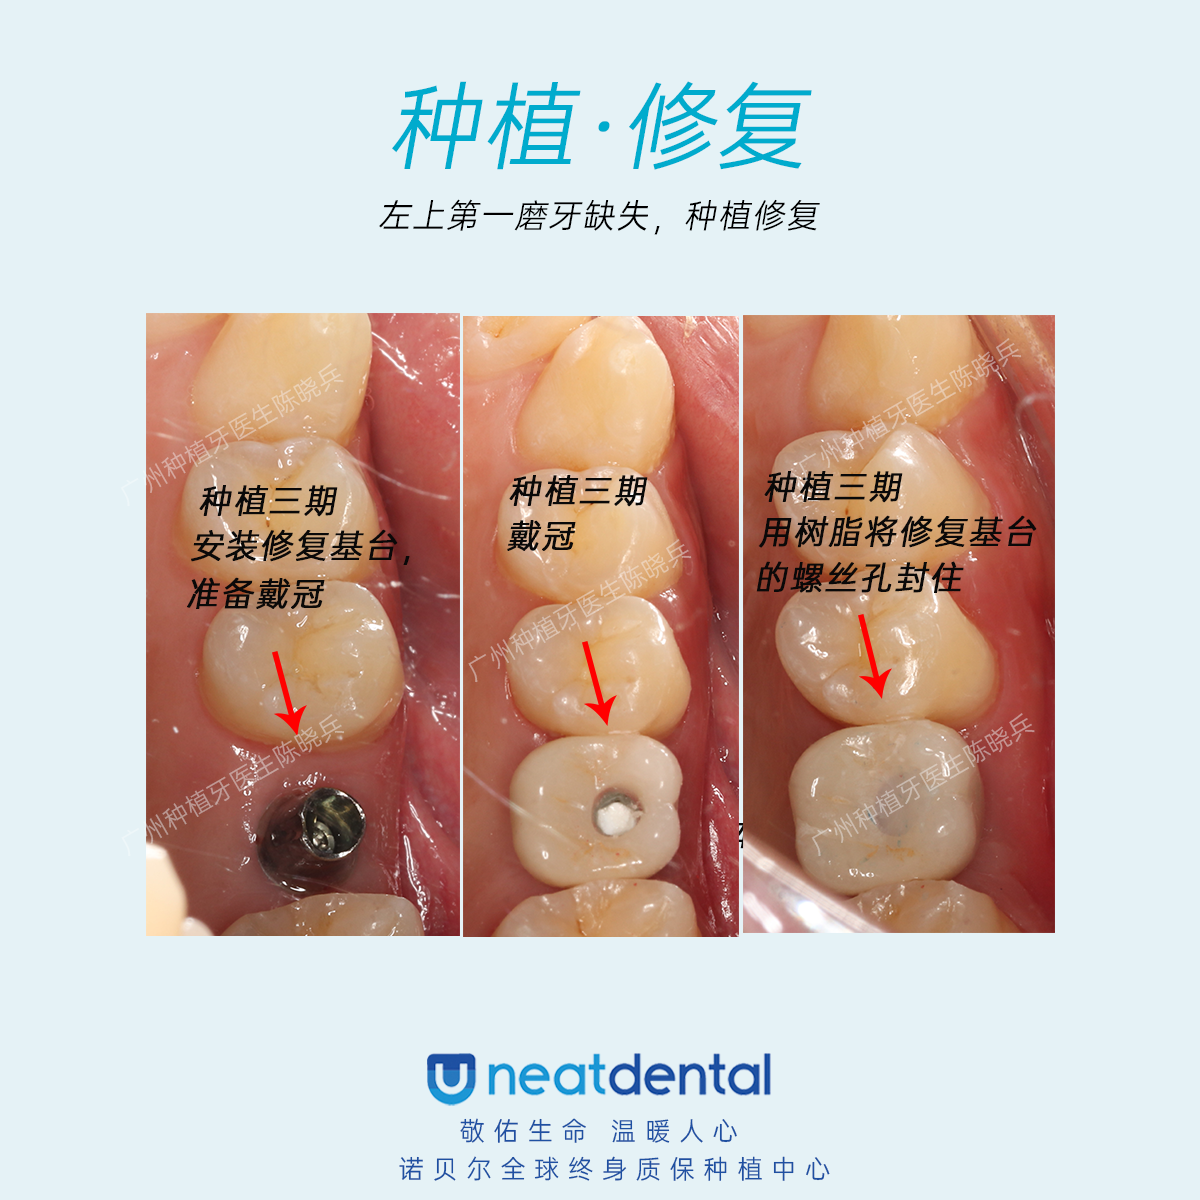 最后一点,关于医生的种植牙案例数量和效果,这也是患者了解种植牙效果